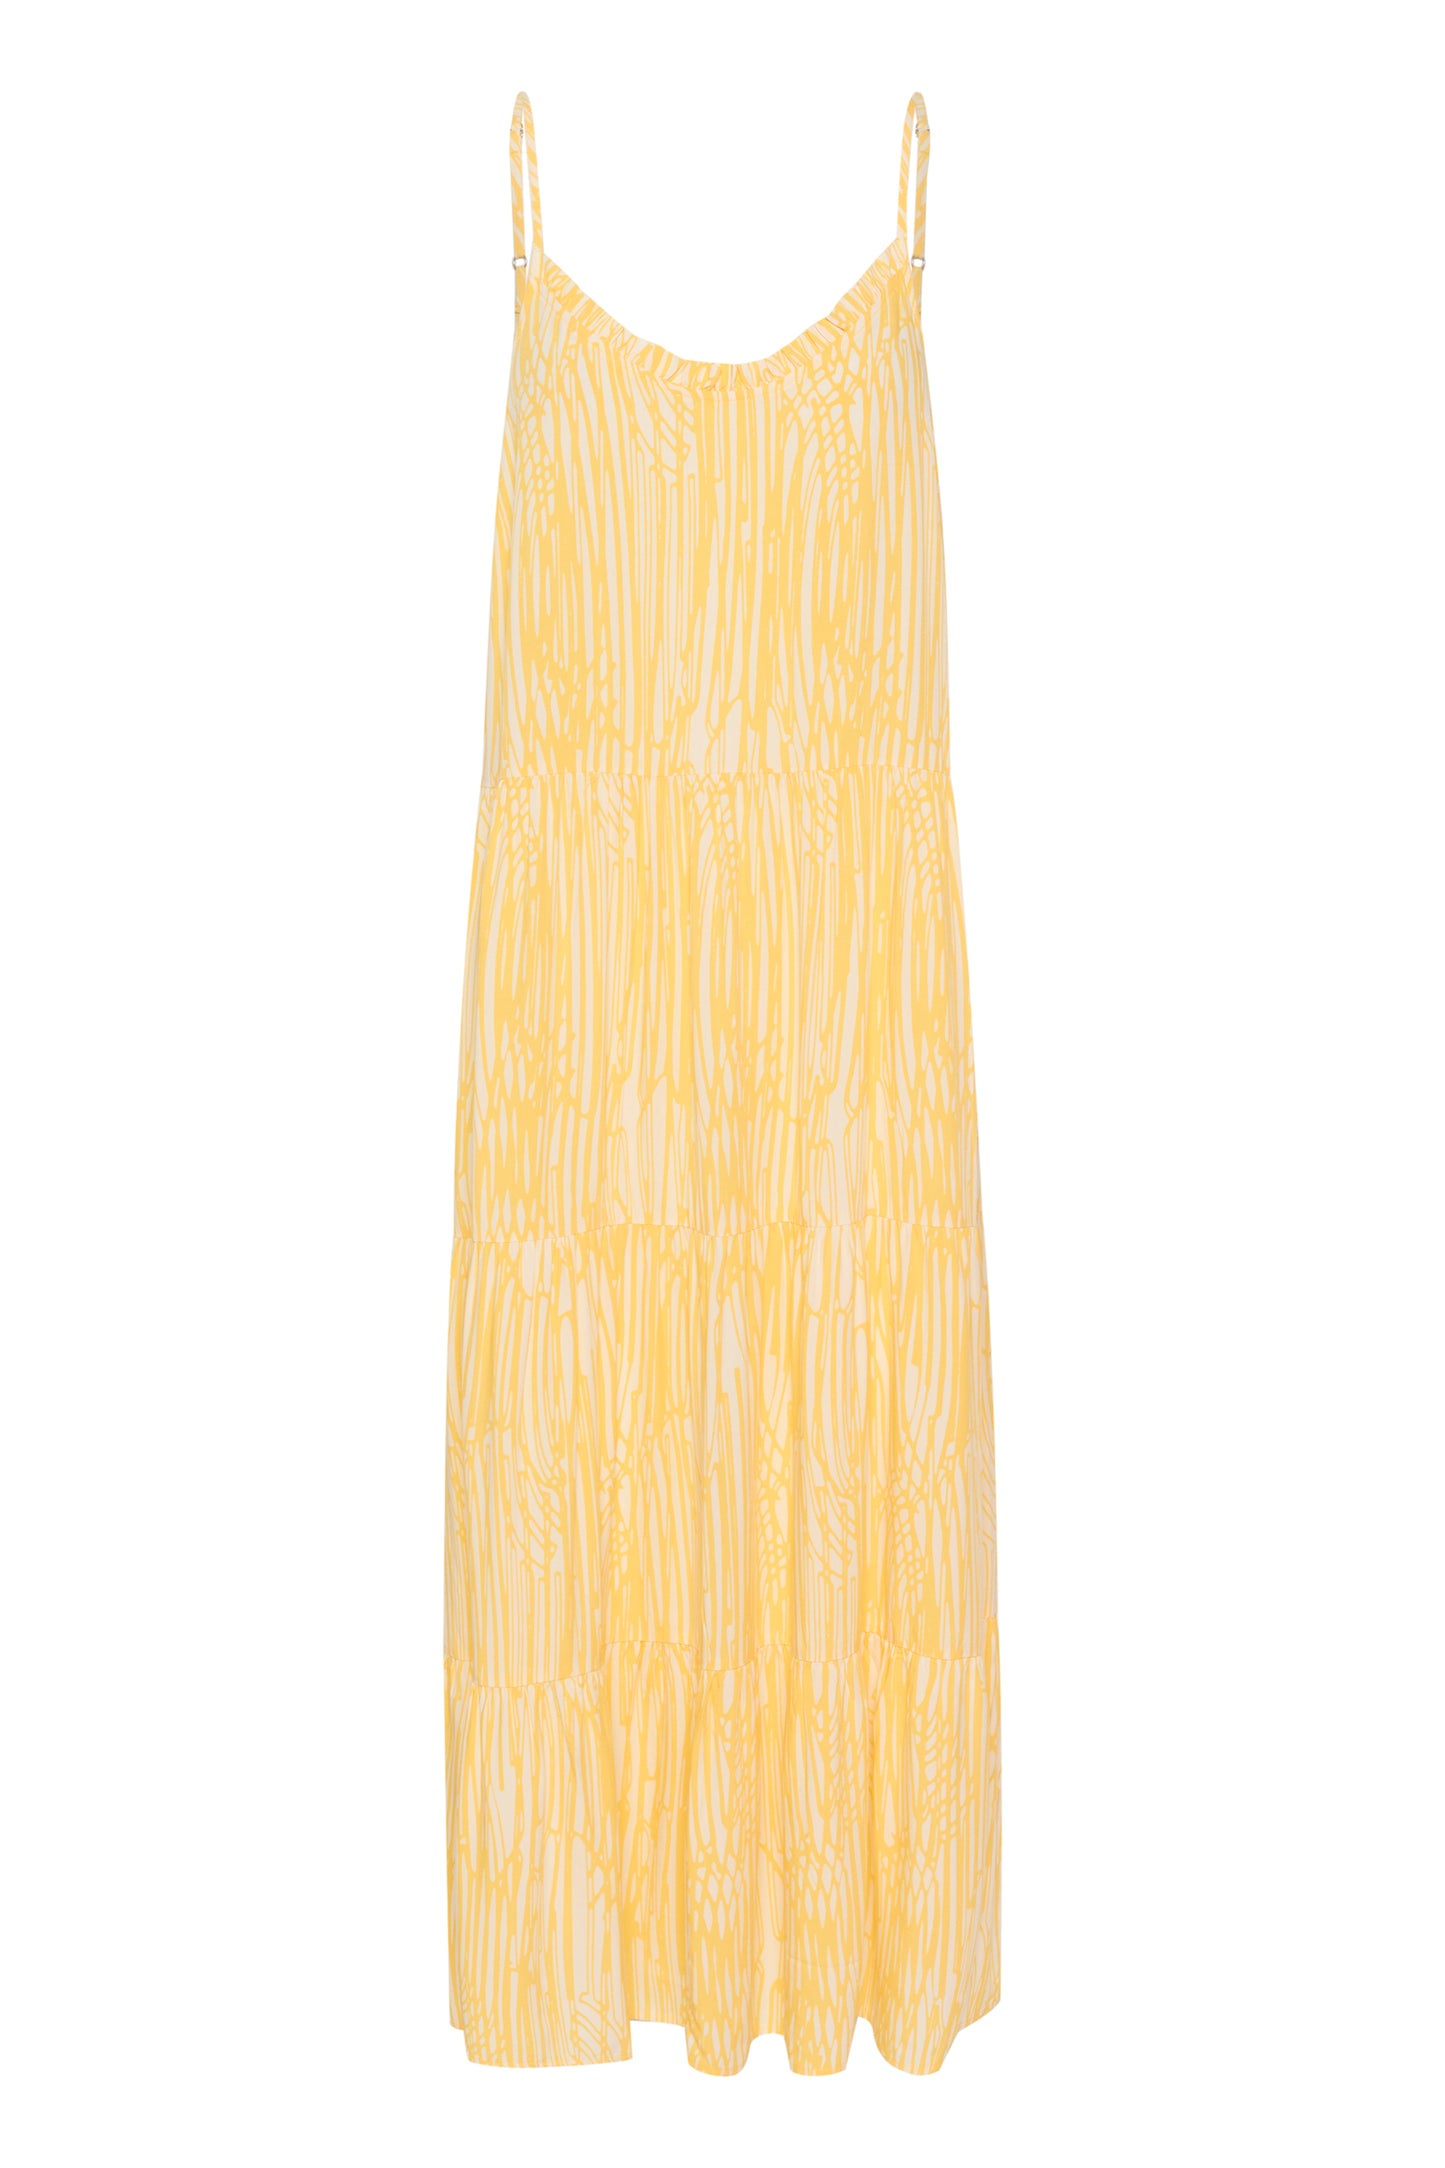 Saint tropez EdaSZ Maxi Strap Dress in Yarrow Painted Stripes